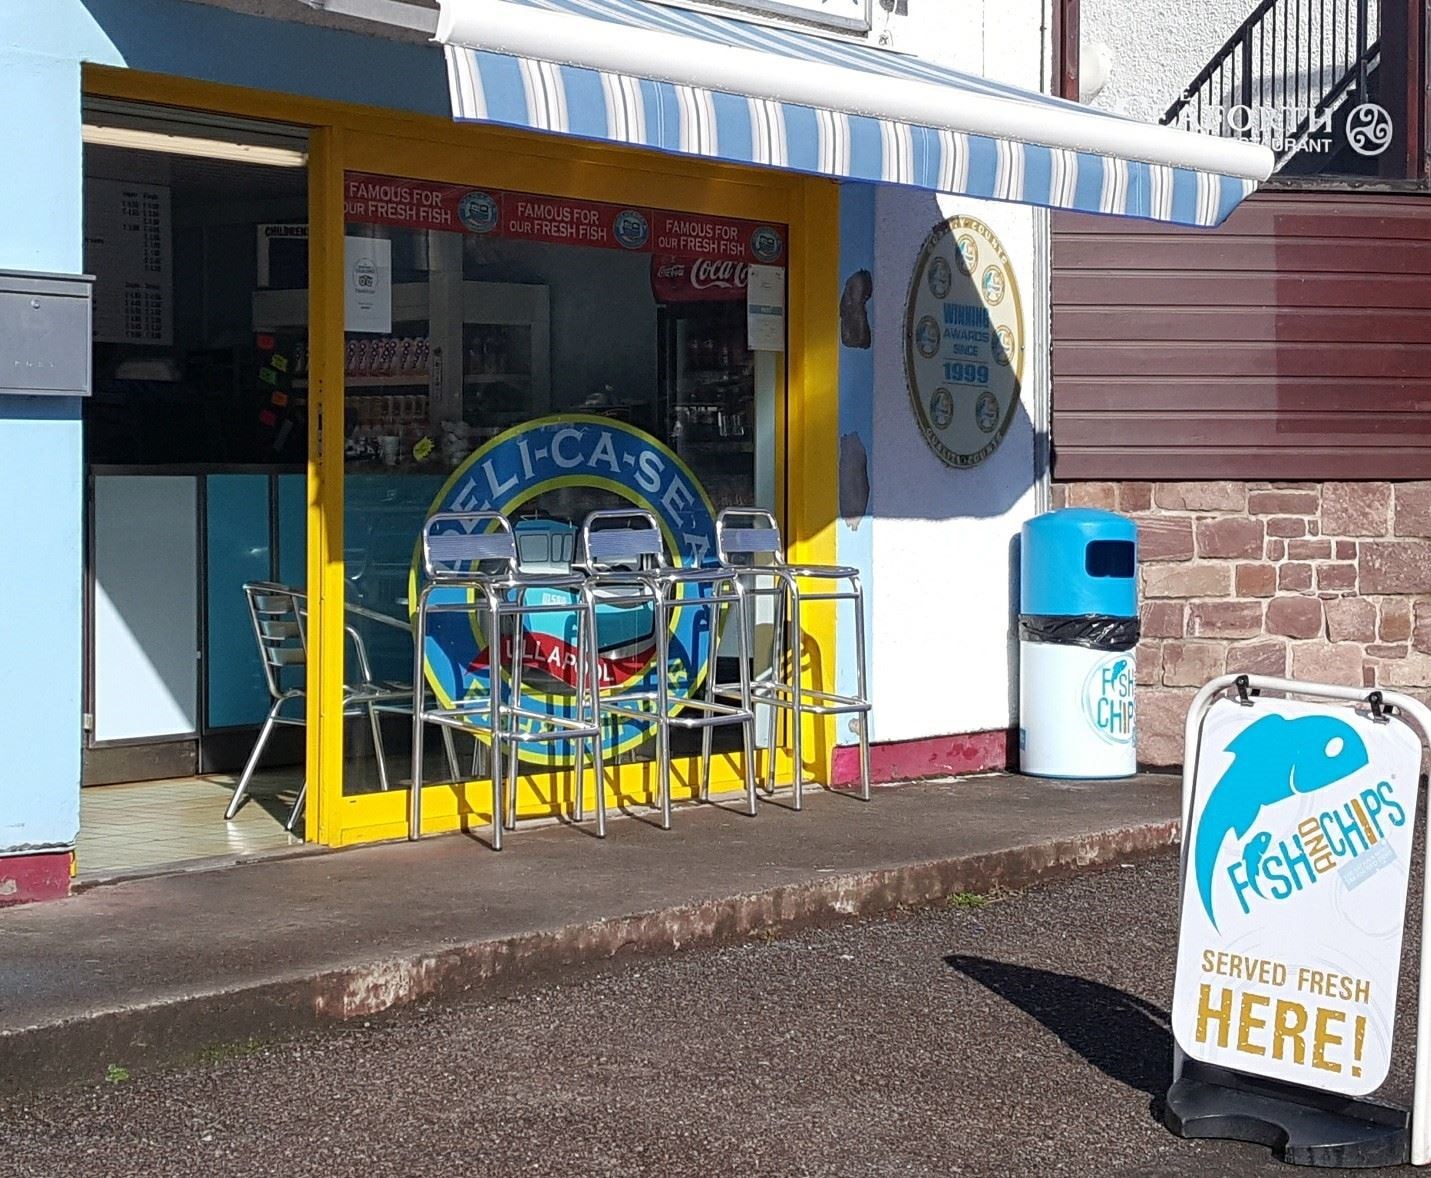 Deli-ca-sea fish and chip shop